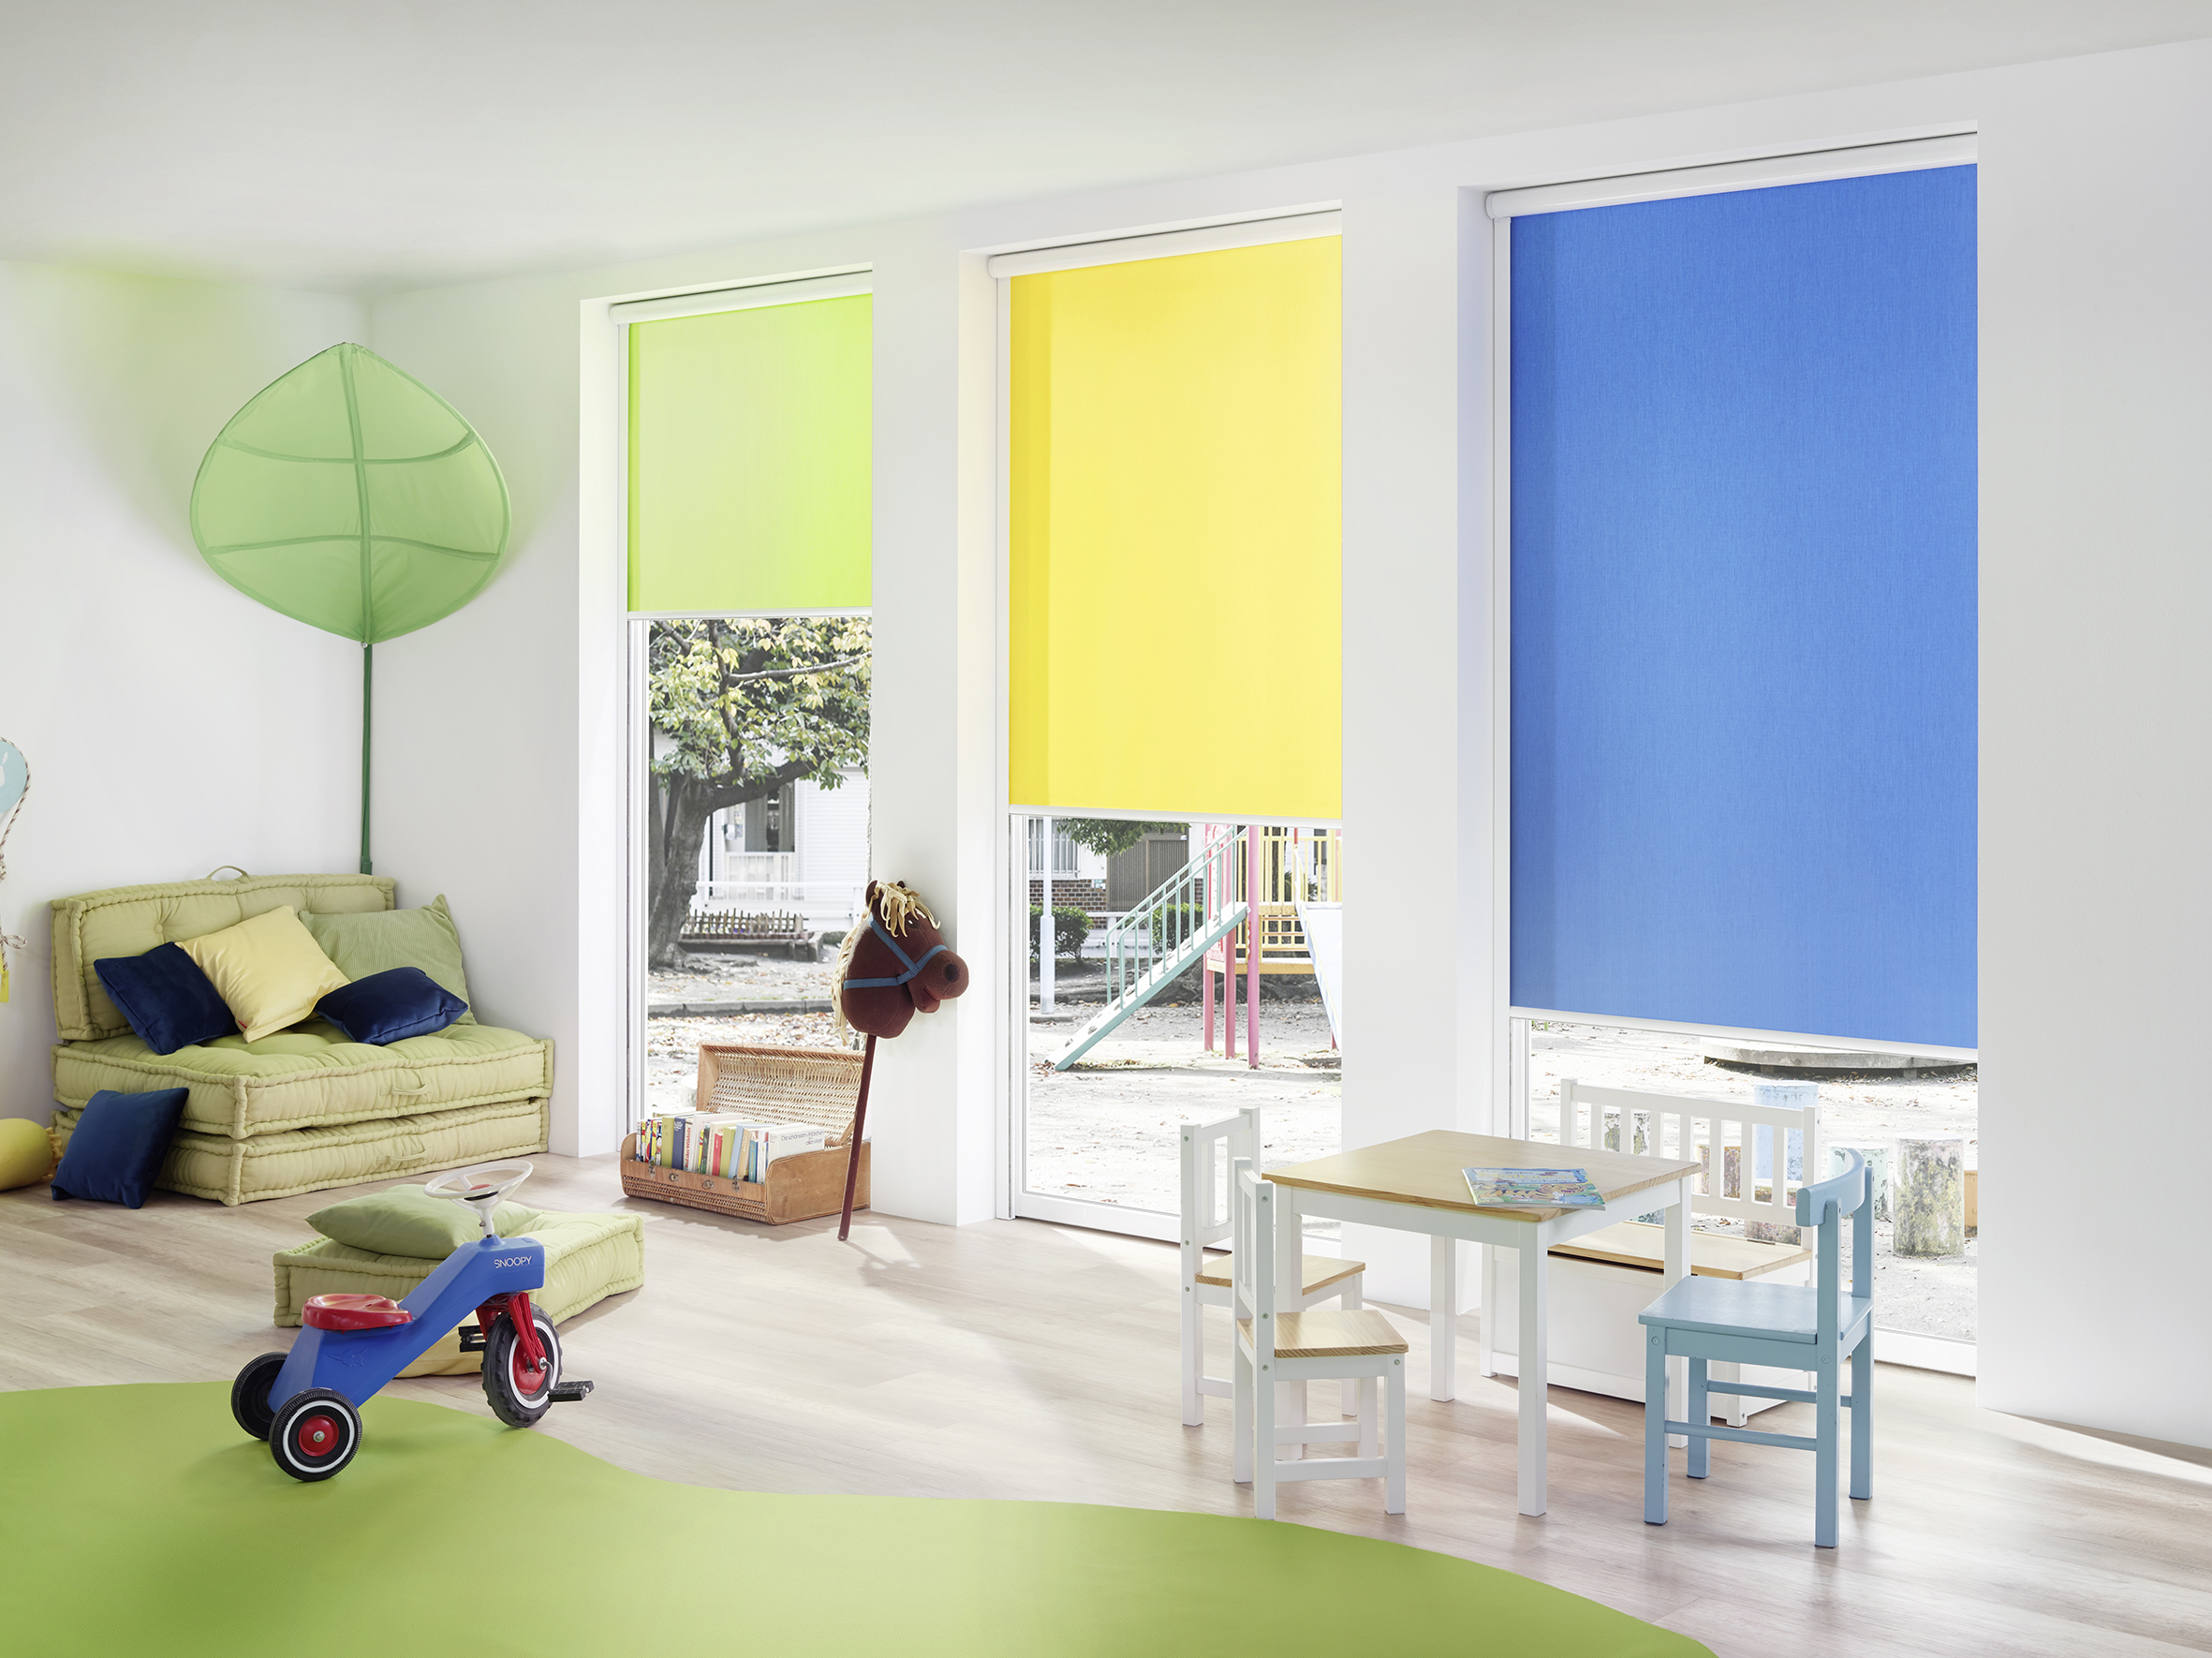 Sonnenschutzrollo in verschiedenen Farben zum Sichtschutz im Kinderzimmer - Schmidt Insektenschutzrahmen GmbH